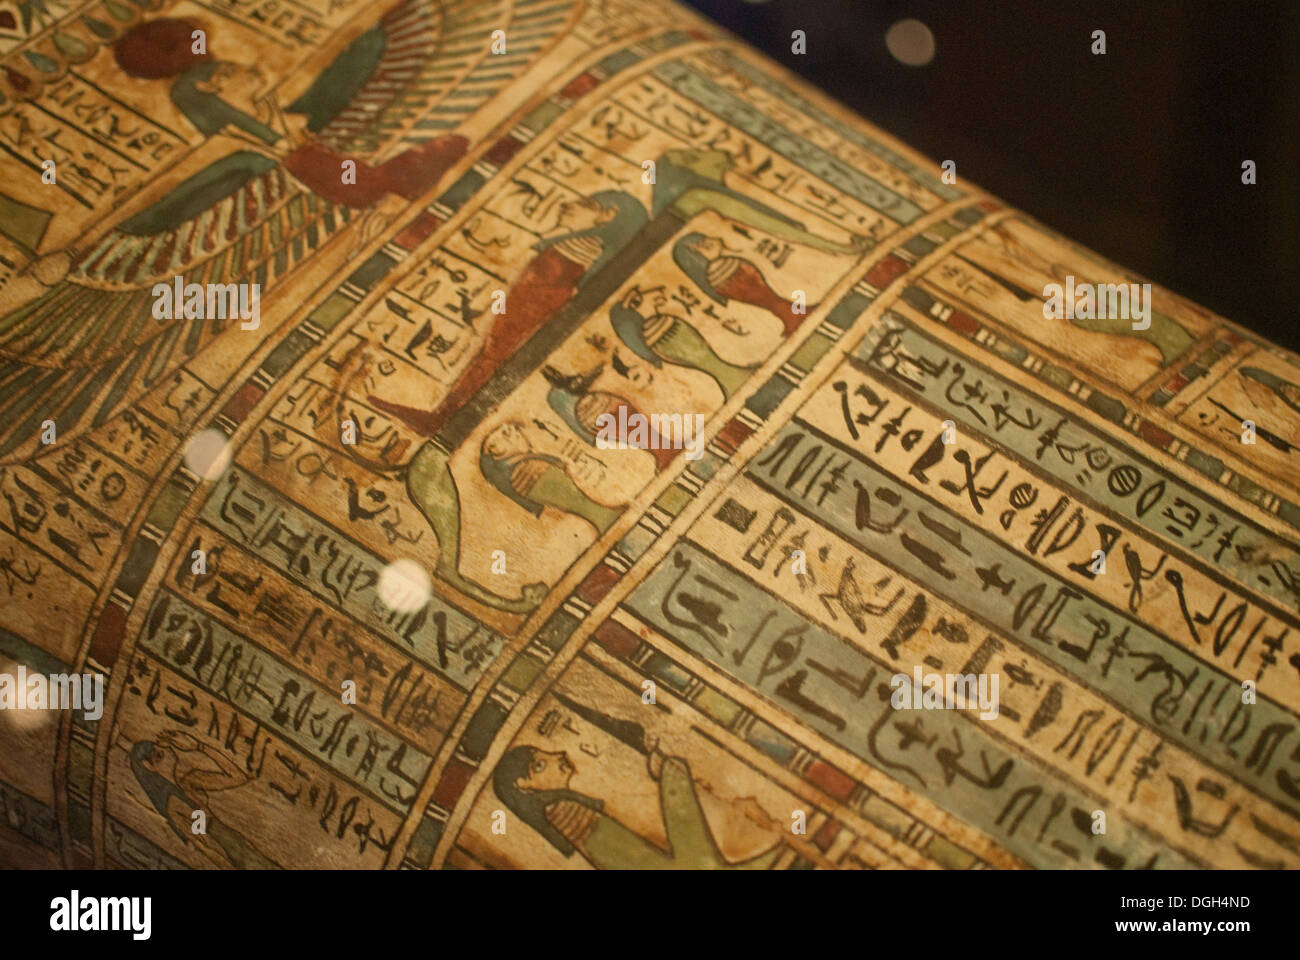 Mummia egiziana a Tesori di culture di tutto il mondo", esposizioni di Madrid Foto Stock